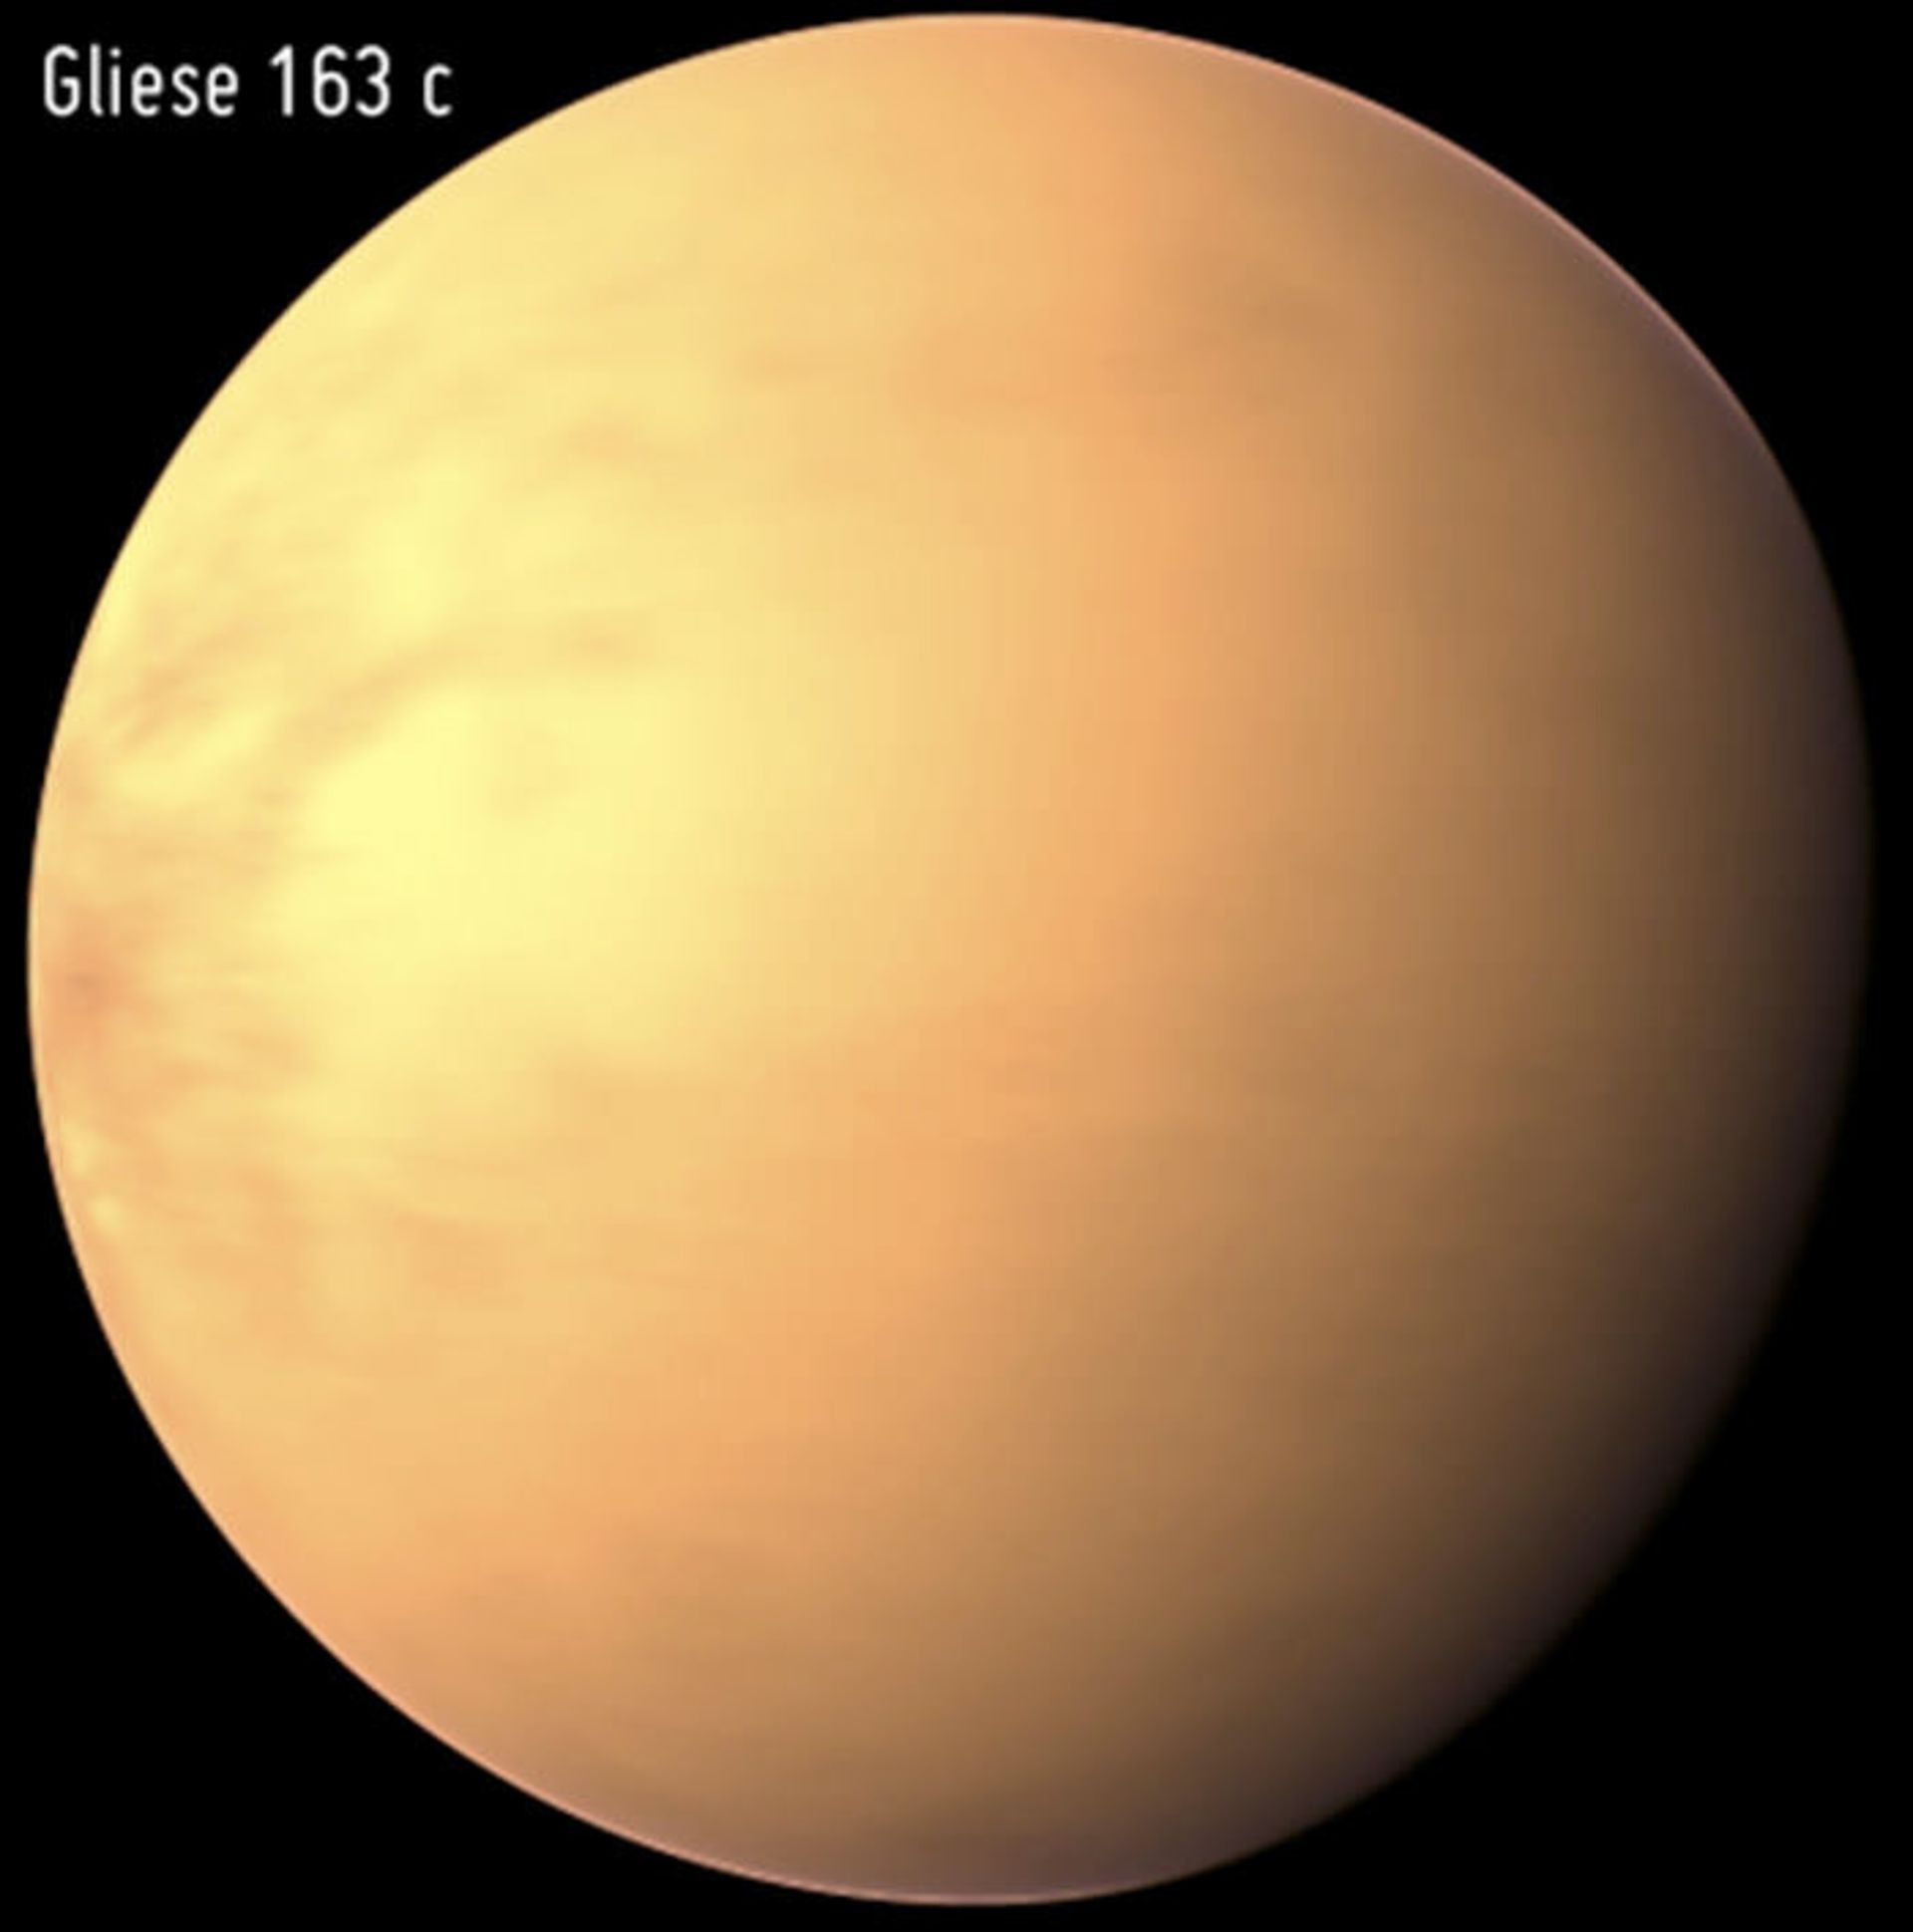 alien-planet-gliese163c-phl